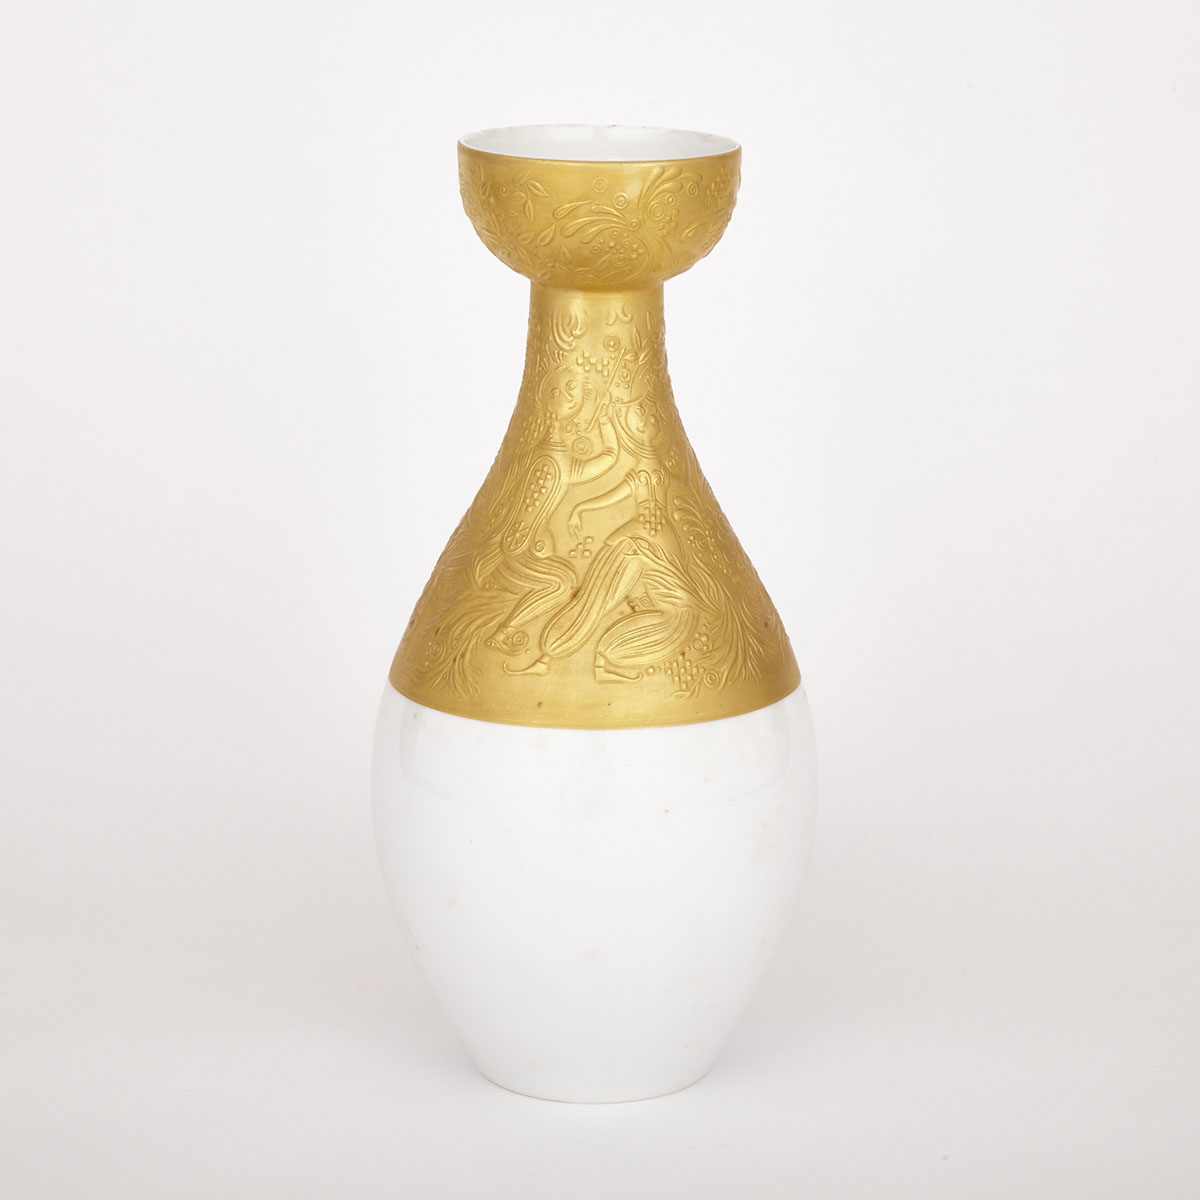 Rosenthal ‘Die Zauberflote’ Vase, Bjorn Wiinblad, 20th century